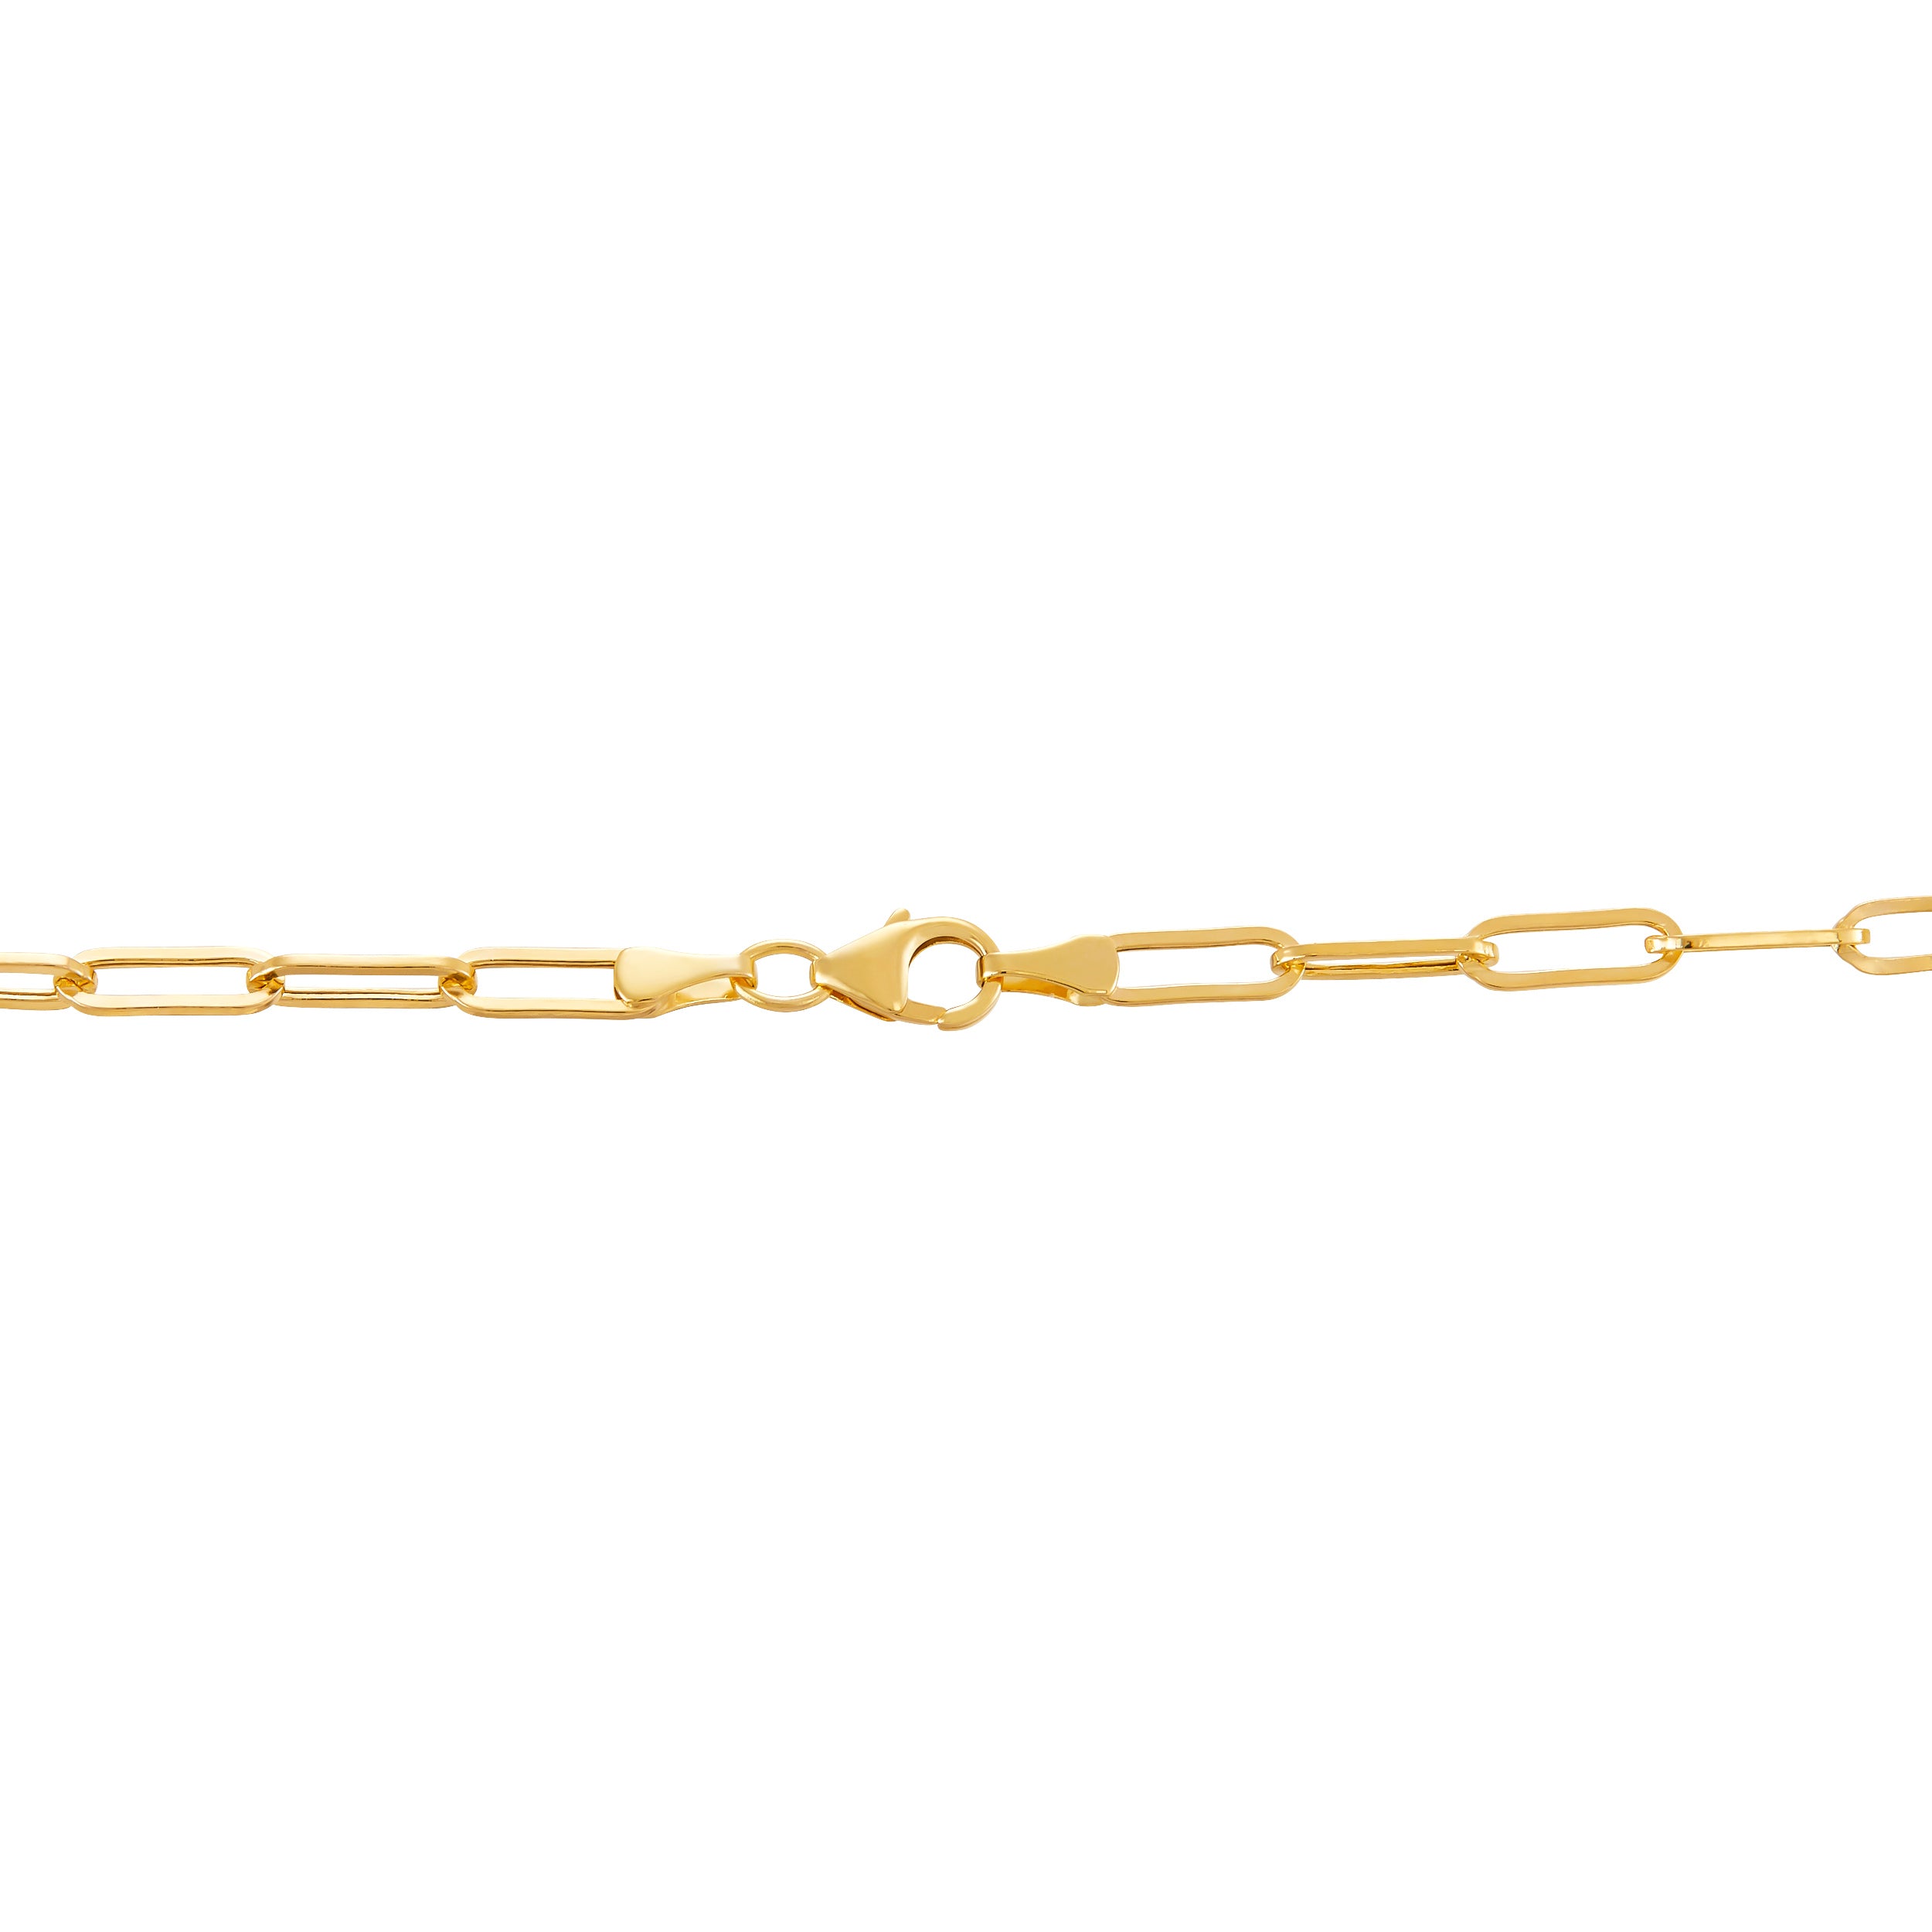 Style: Link Description: Chain - Gold Necklaces